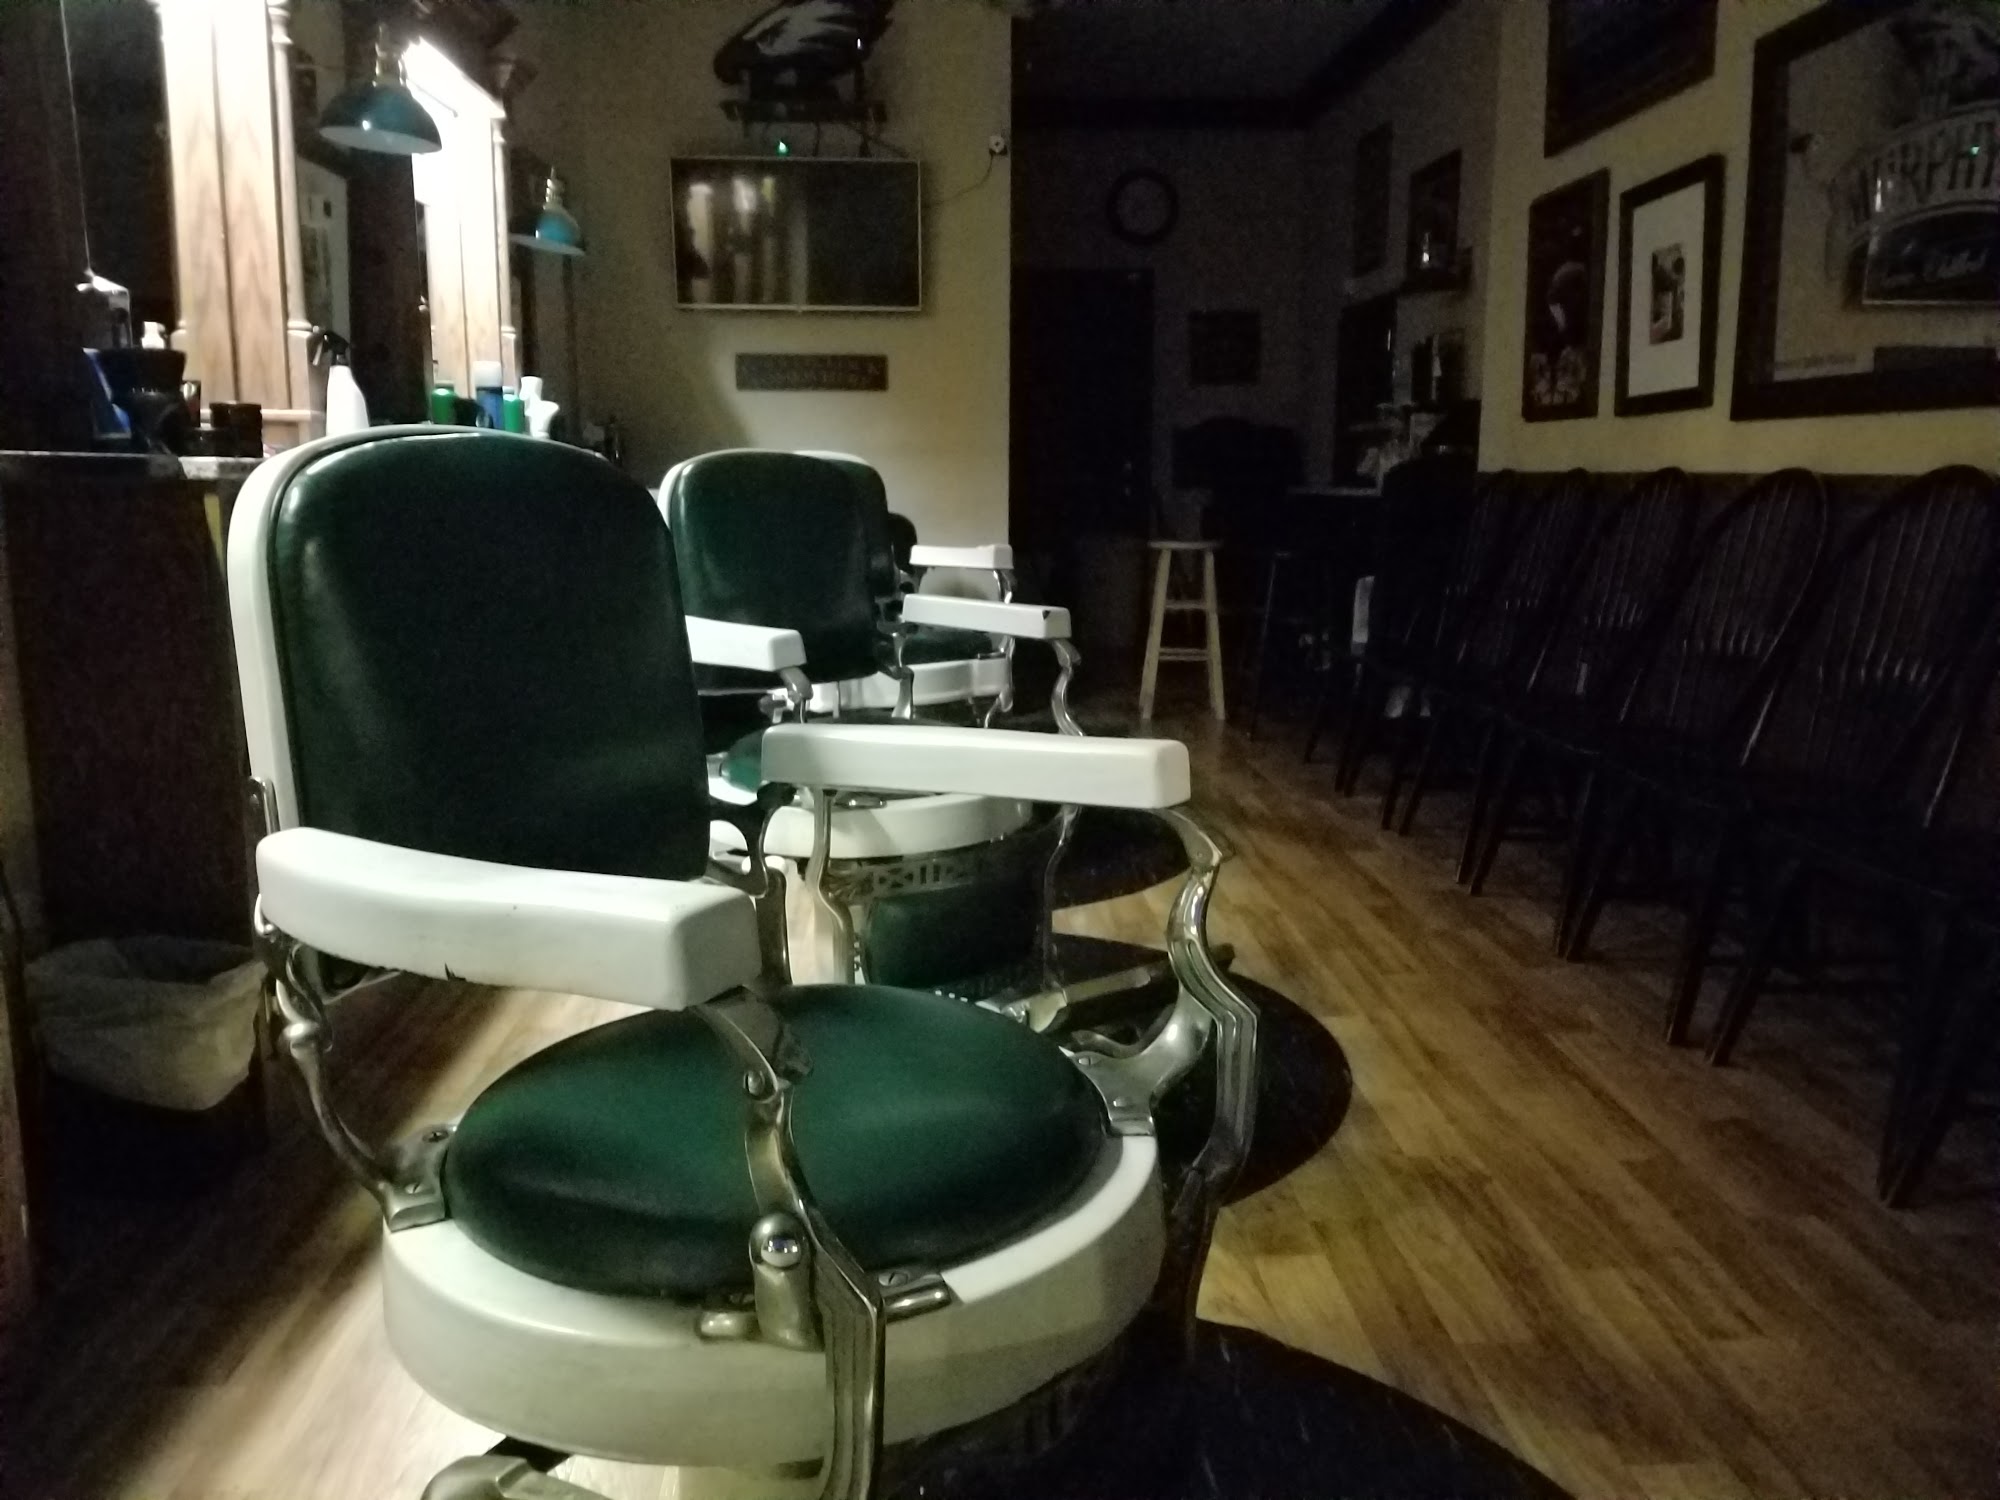 VanRyn's Barber Shop